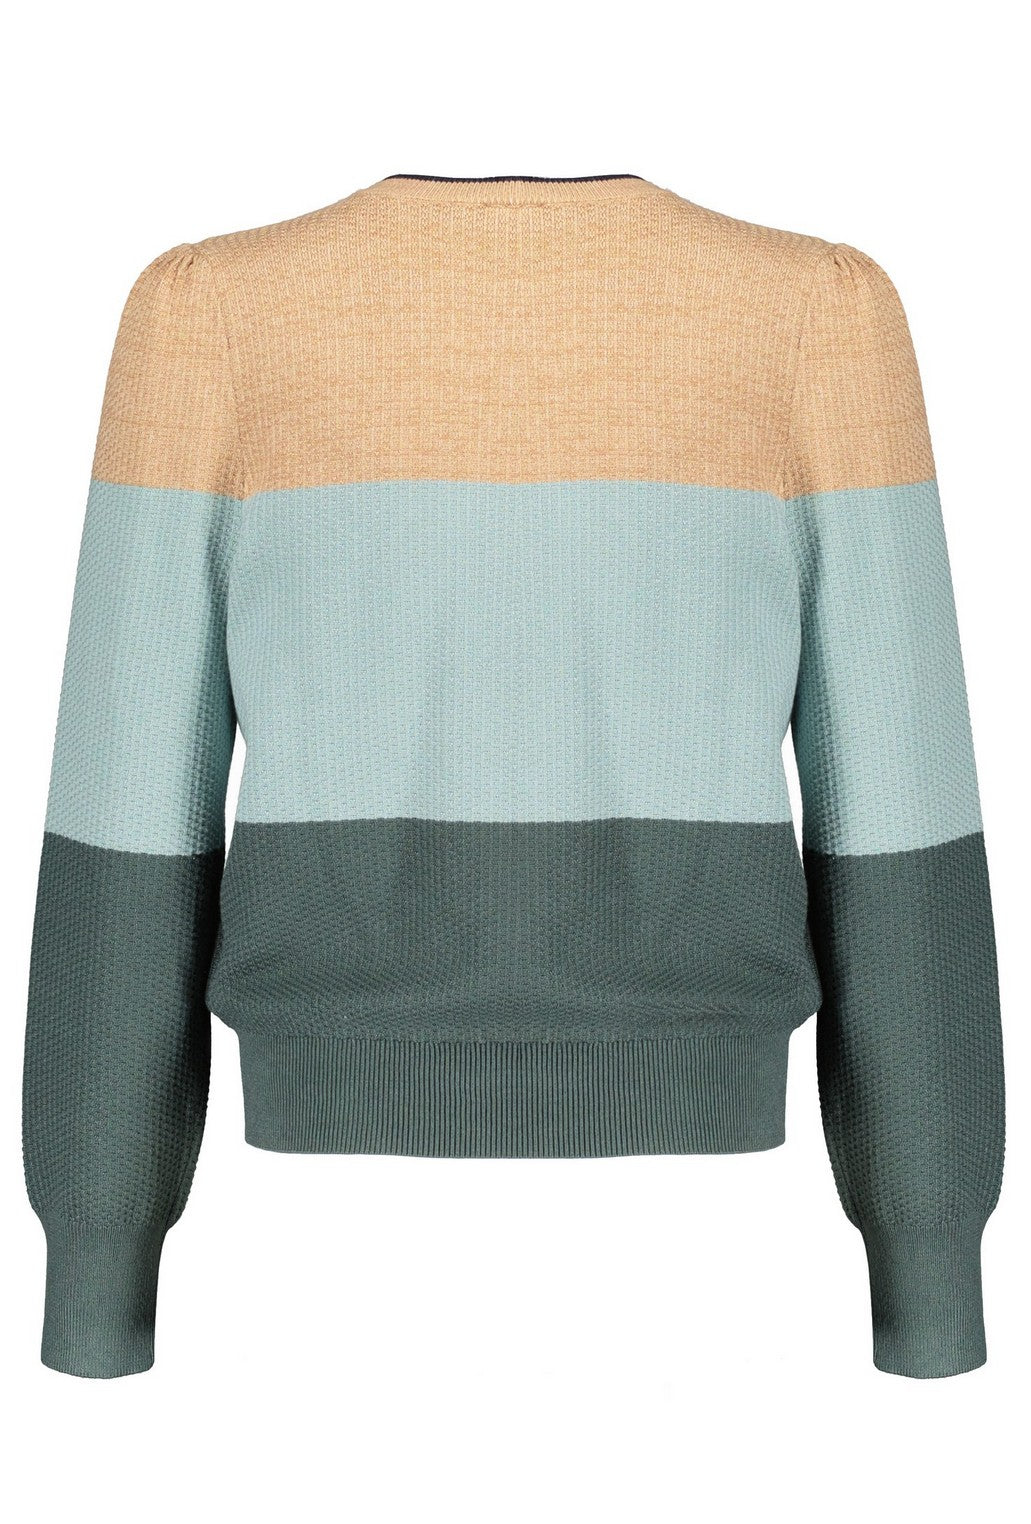 Meisjes Kaia colorblock knitted sweater puffed sleeves van NoBell in de kleur Dark Canton in maat 170-176.